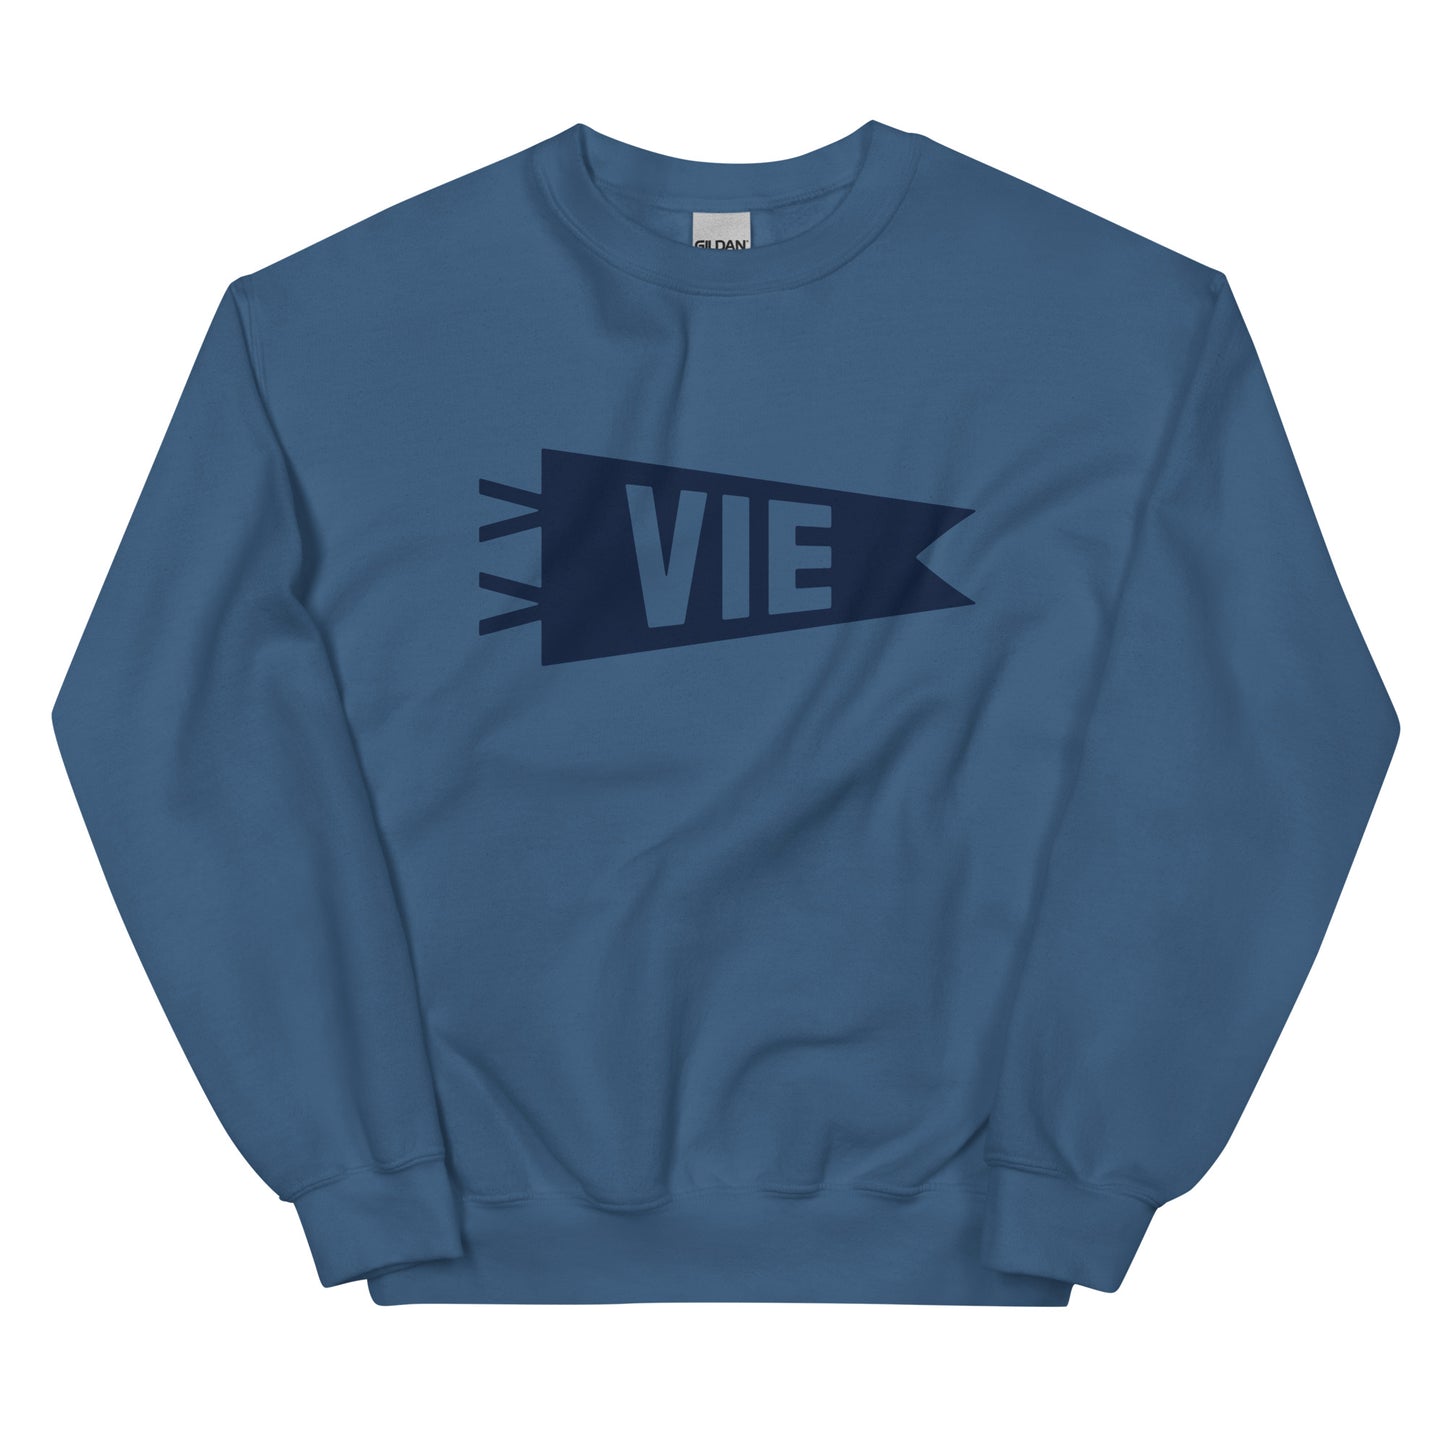 Airport Code Sweatshirt - Navy Blue Graphic • VIE Vienna • YHM Designs - Image 01